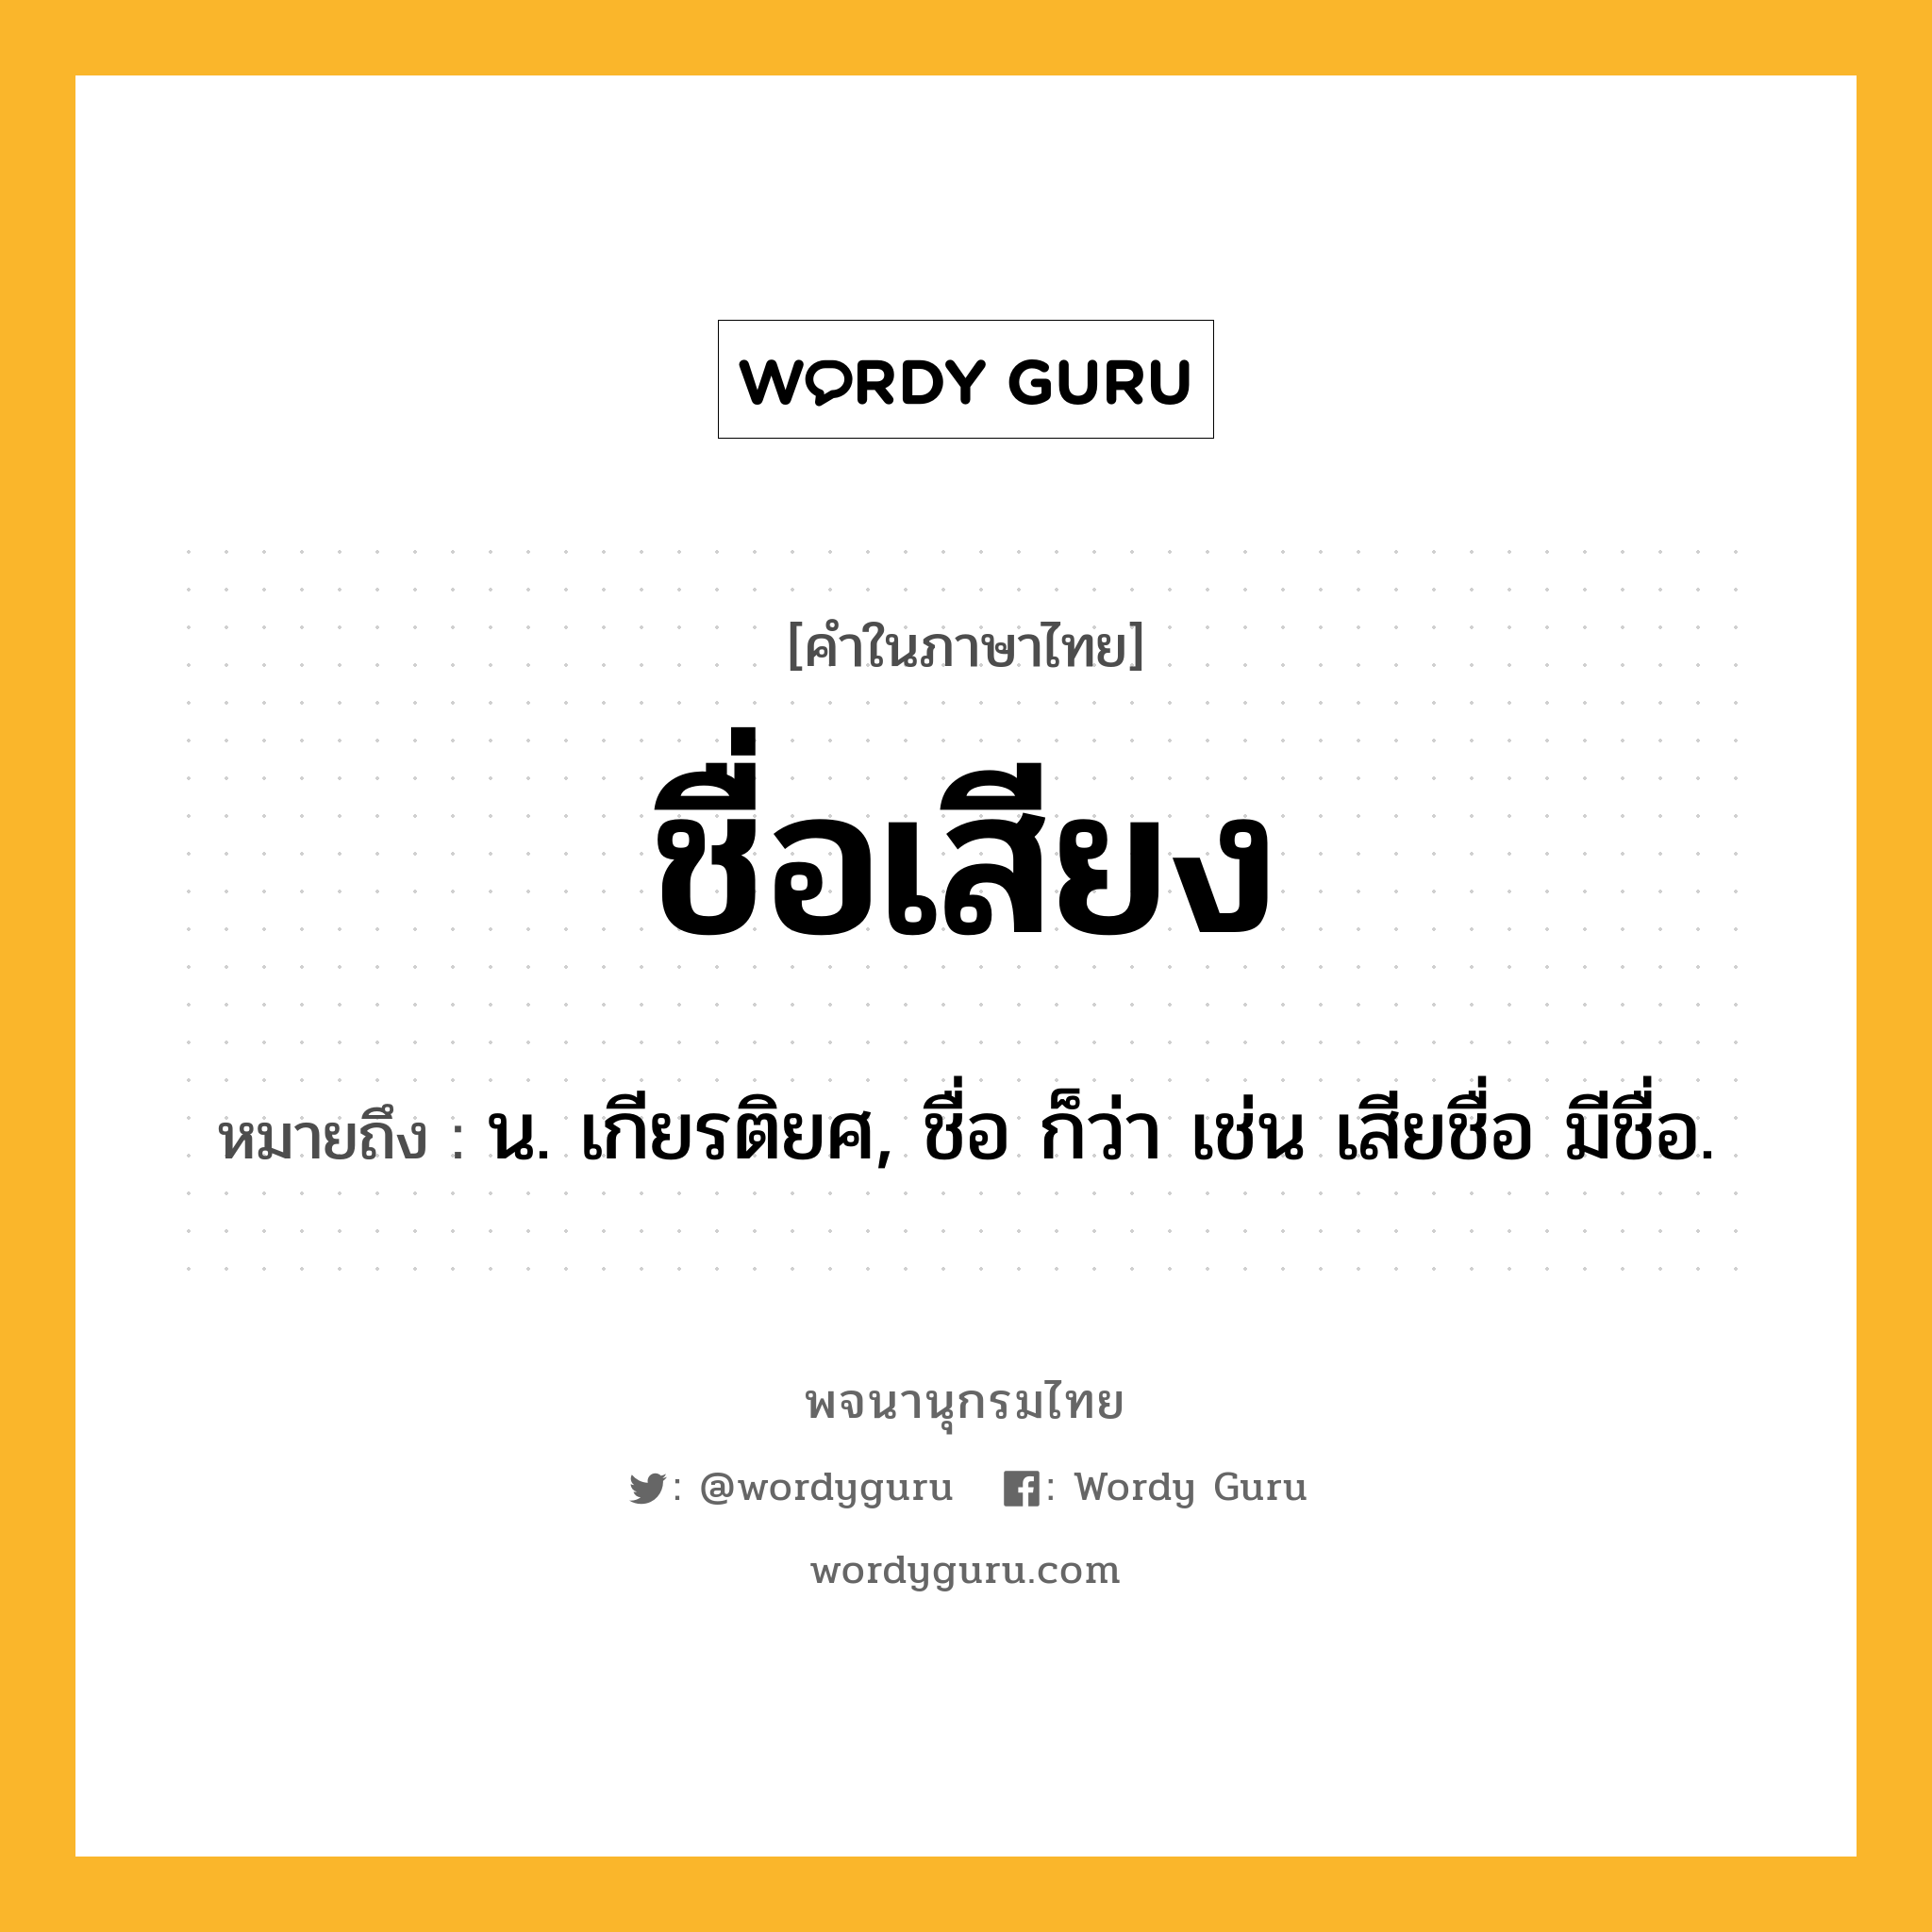 ชื่อเสียง หมายถึงอะไร?, คำในภาษาไทย ชื่อเสียง หมายถึง น. เกียรติยศ, ชื่อ ก็ว่า เช่น เสียชื่อ มีชื่อ.